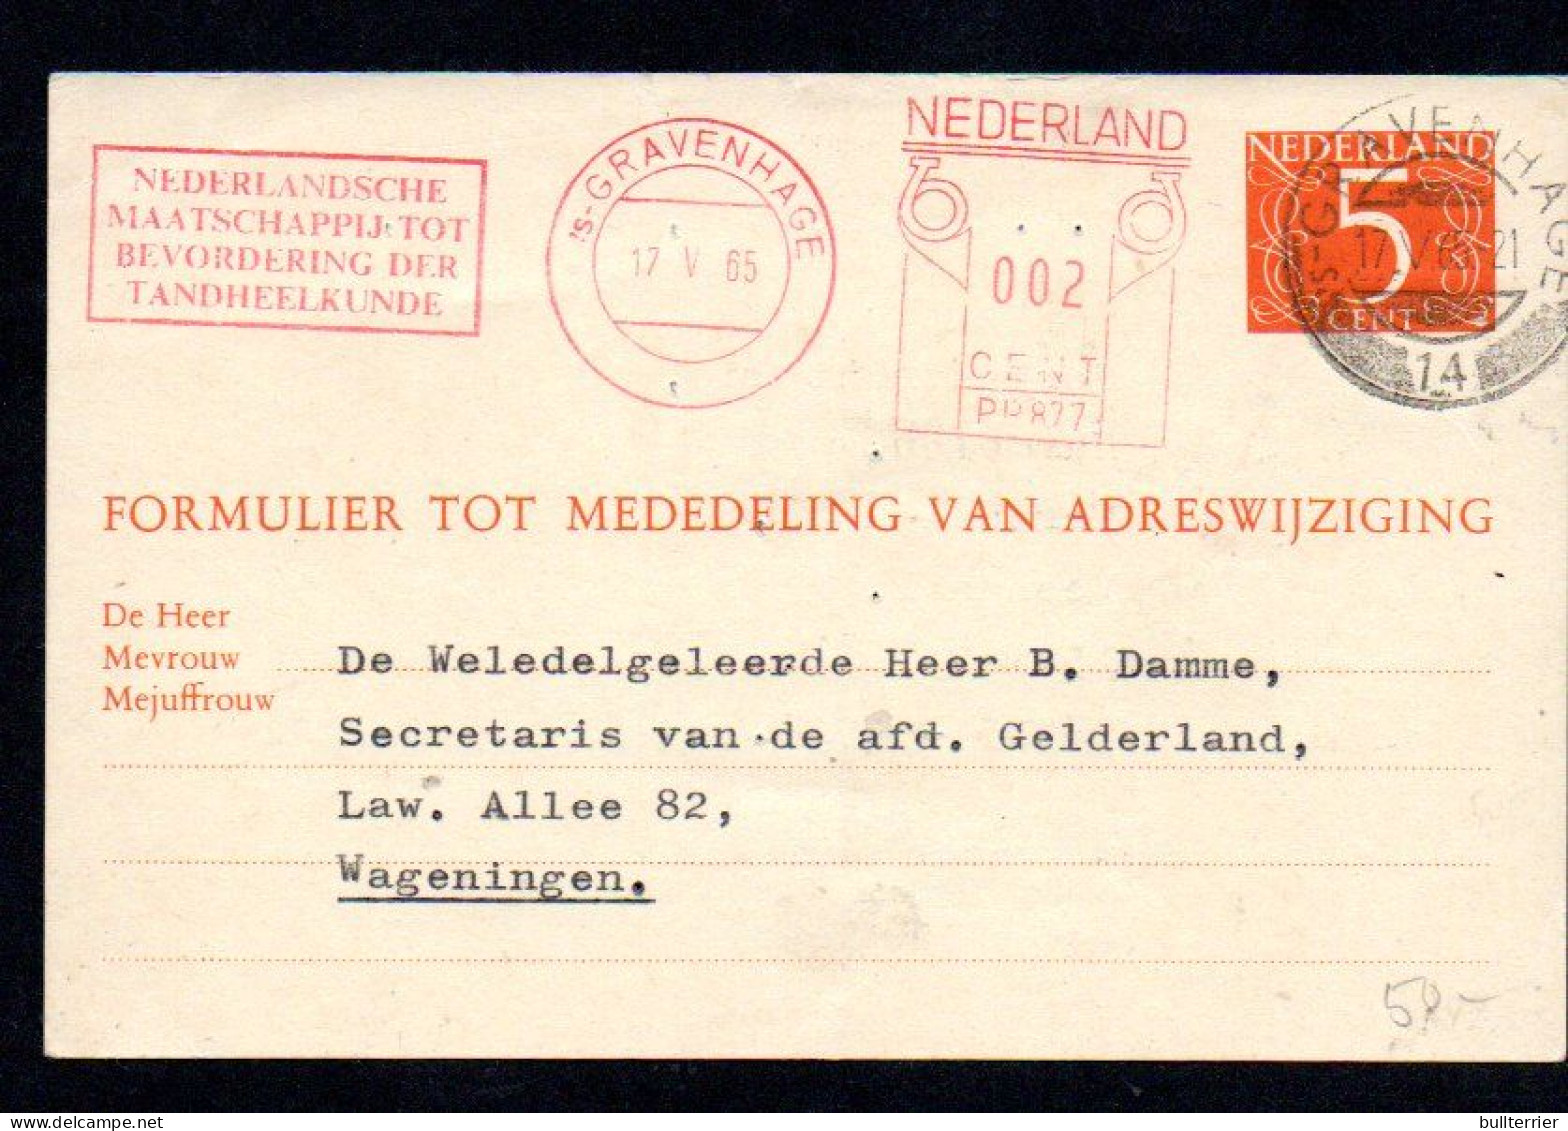 DENISTRY -  NETHERLANDS - 1965- DENTAL COVER WAGENINGE WITH SLOGAN POSTMARK - Medizin